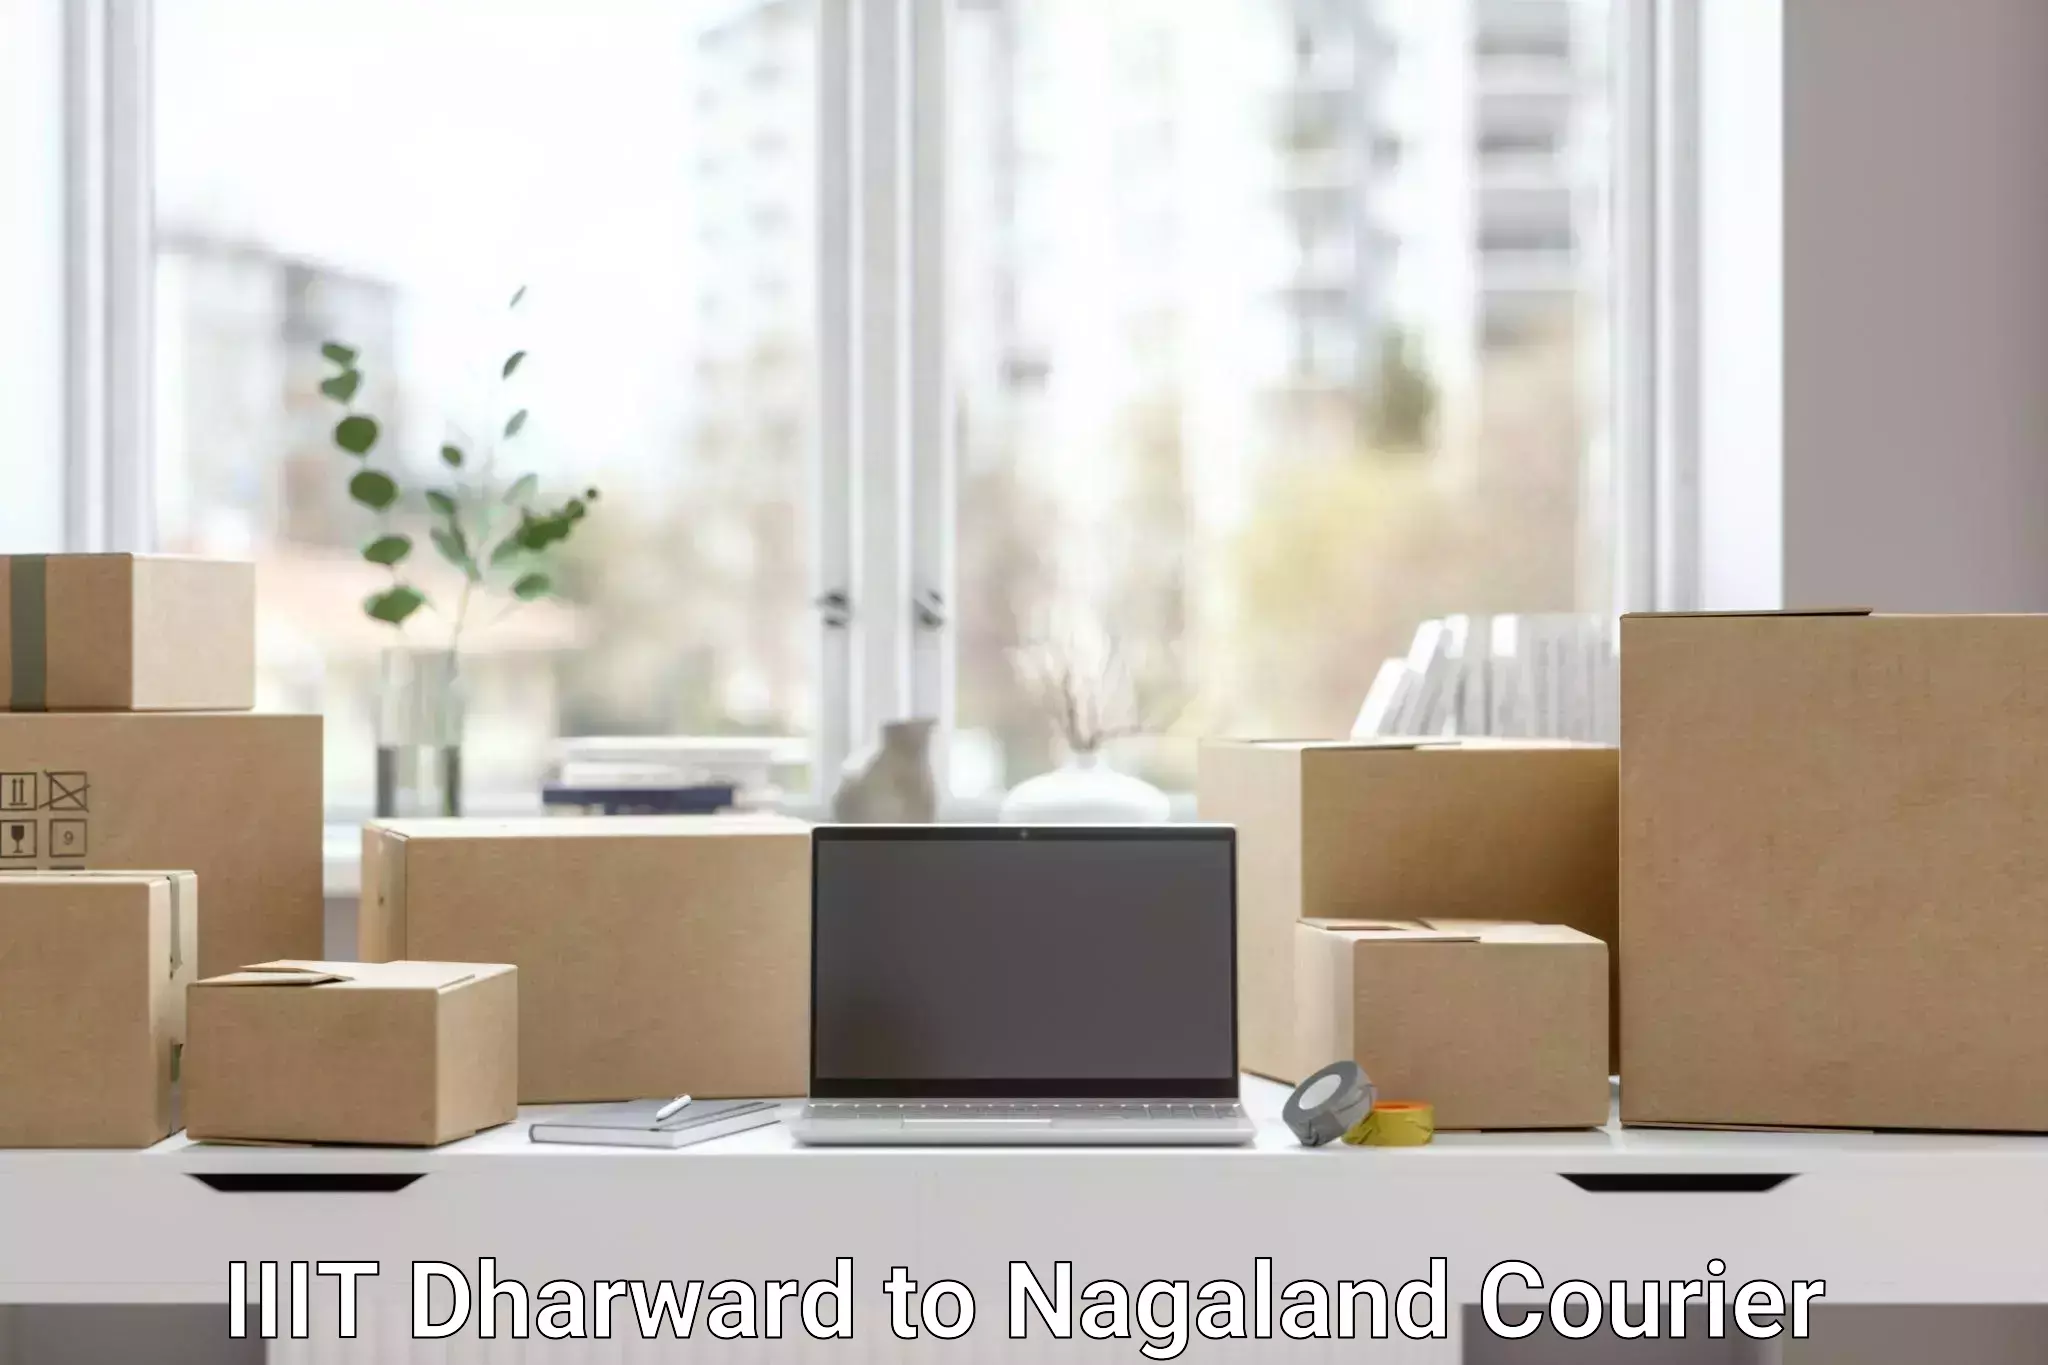 Business shipping needs IIIT Dharward to Nagaland